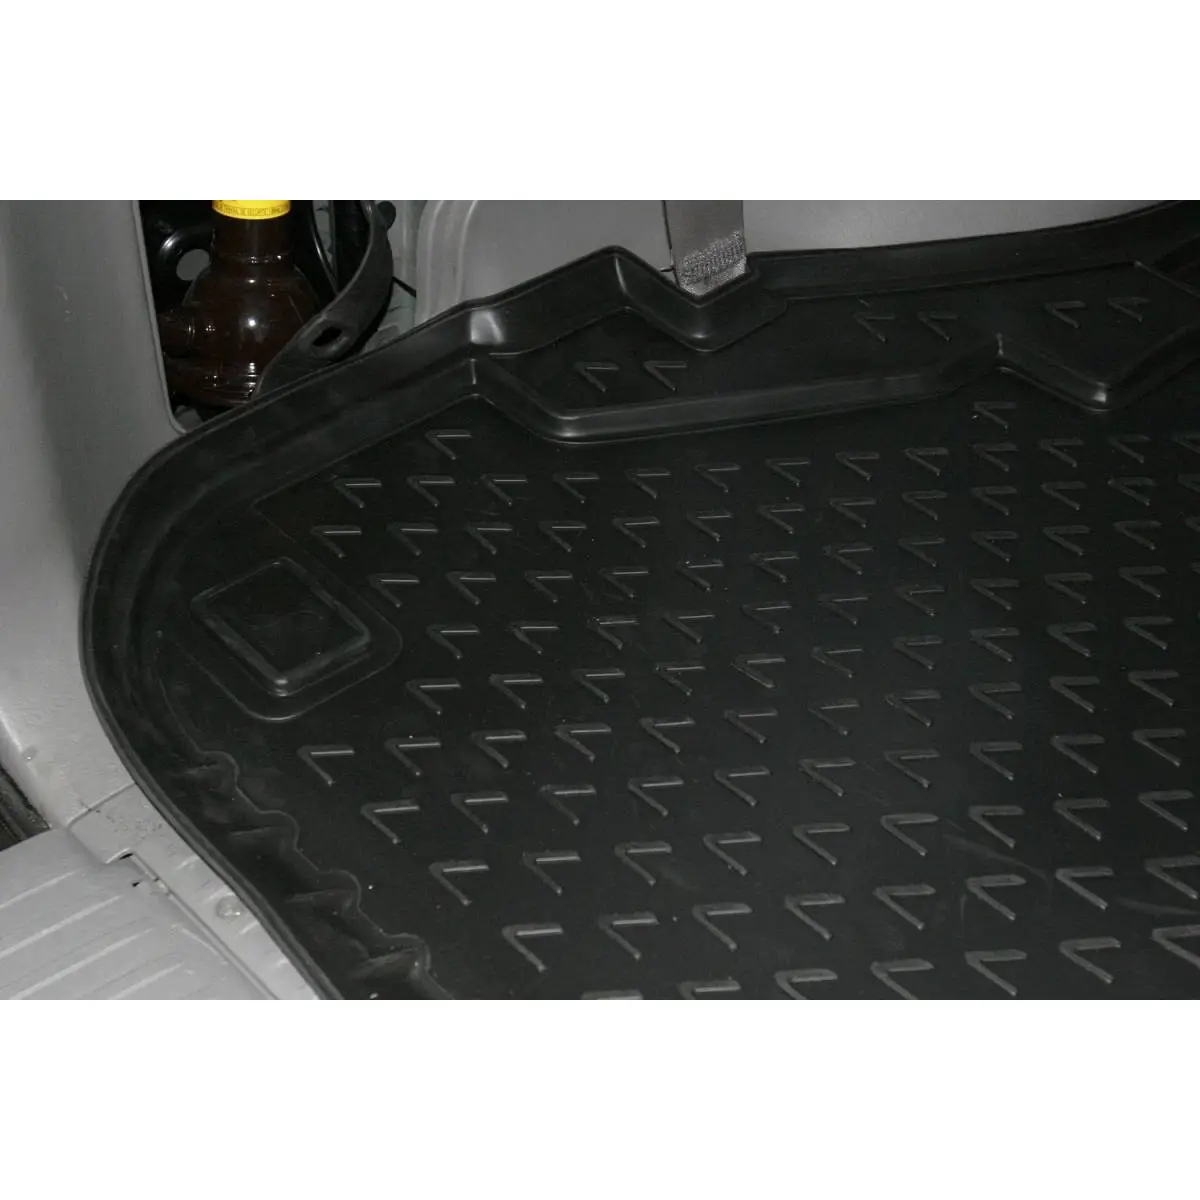 Коврик в багажник полиуретан серый цвет Element Z7 FMEQ nlc2915g12g 1437099768 CYLEZBF изображение 2